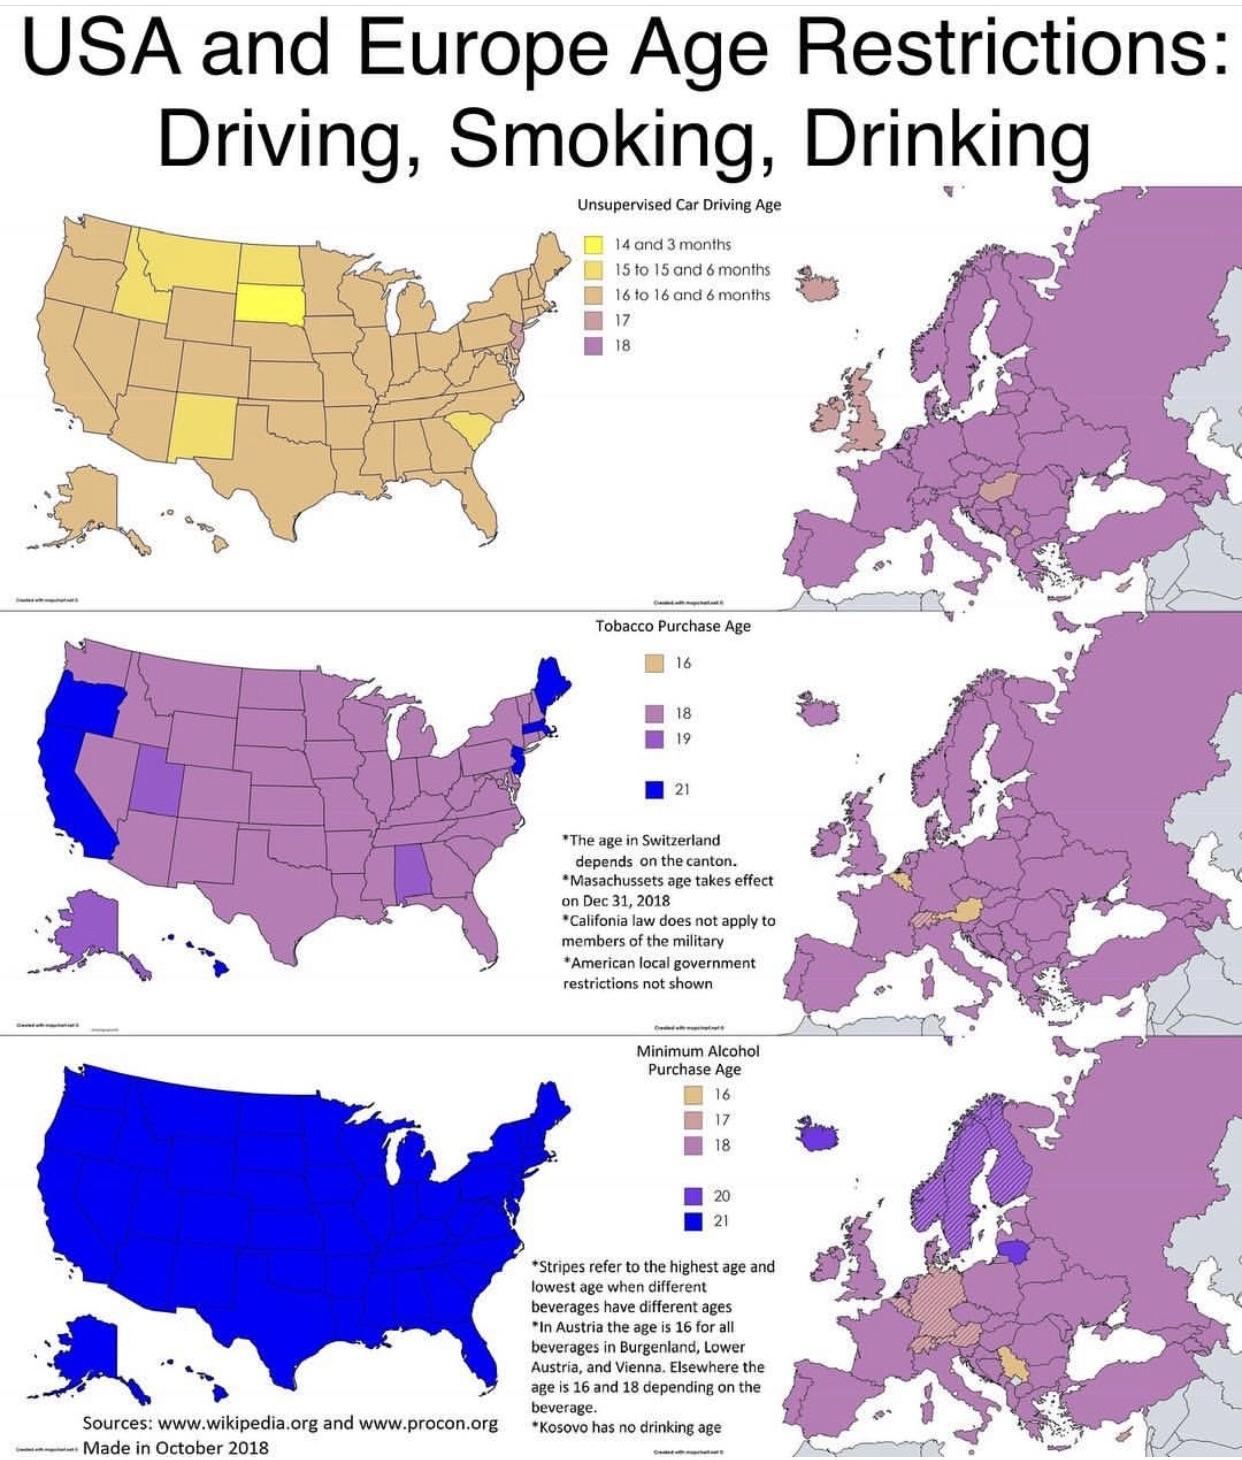 Ograniczenia wiekowe w USA i Europie: prowadzenie pojazdów, palenie papierosów, picie alkoholu, 2018